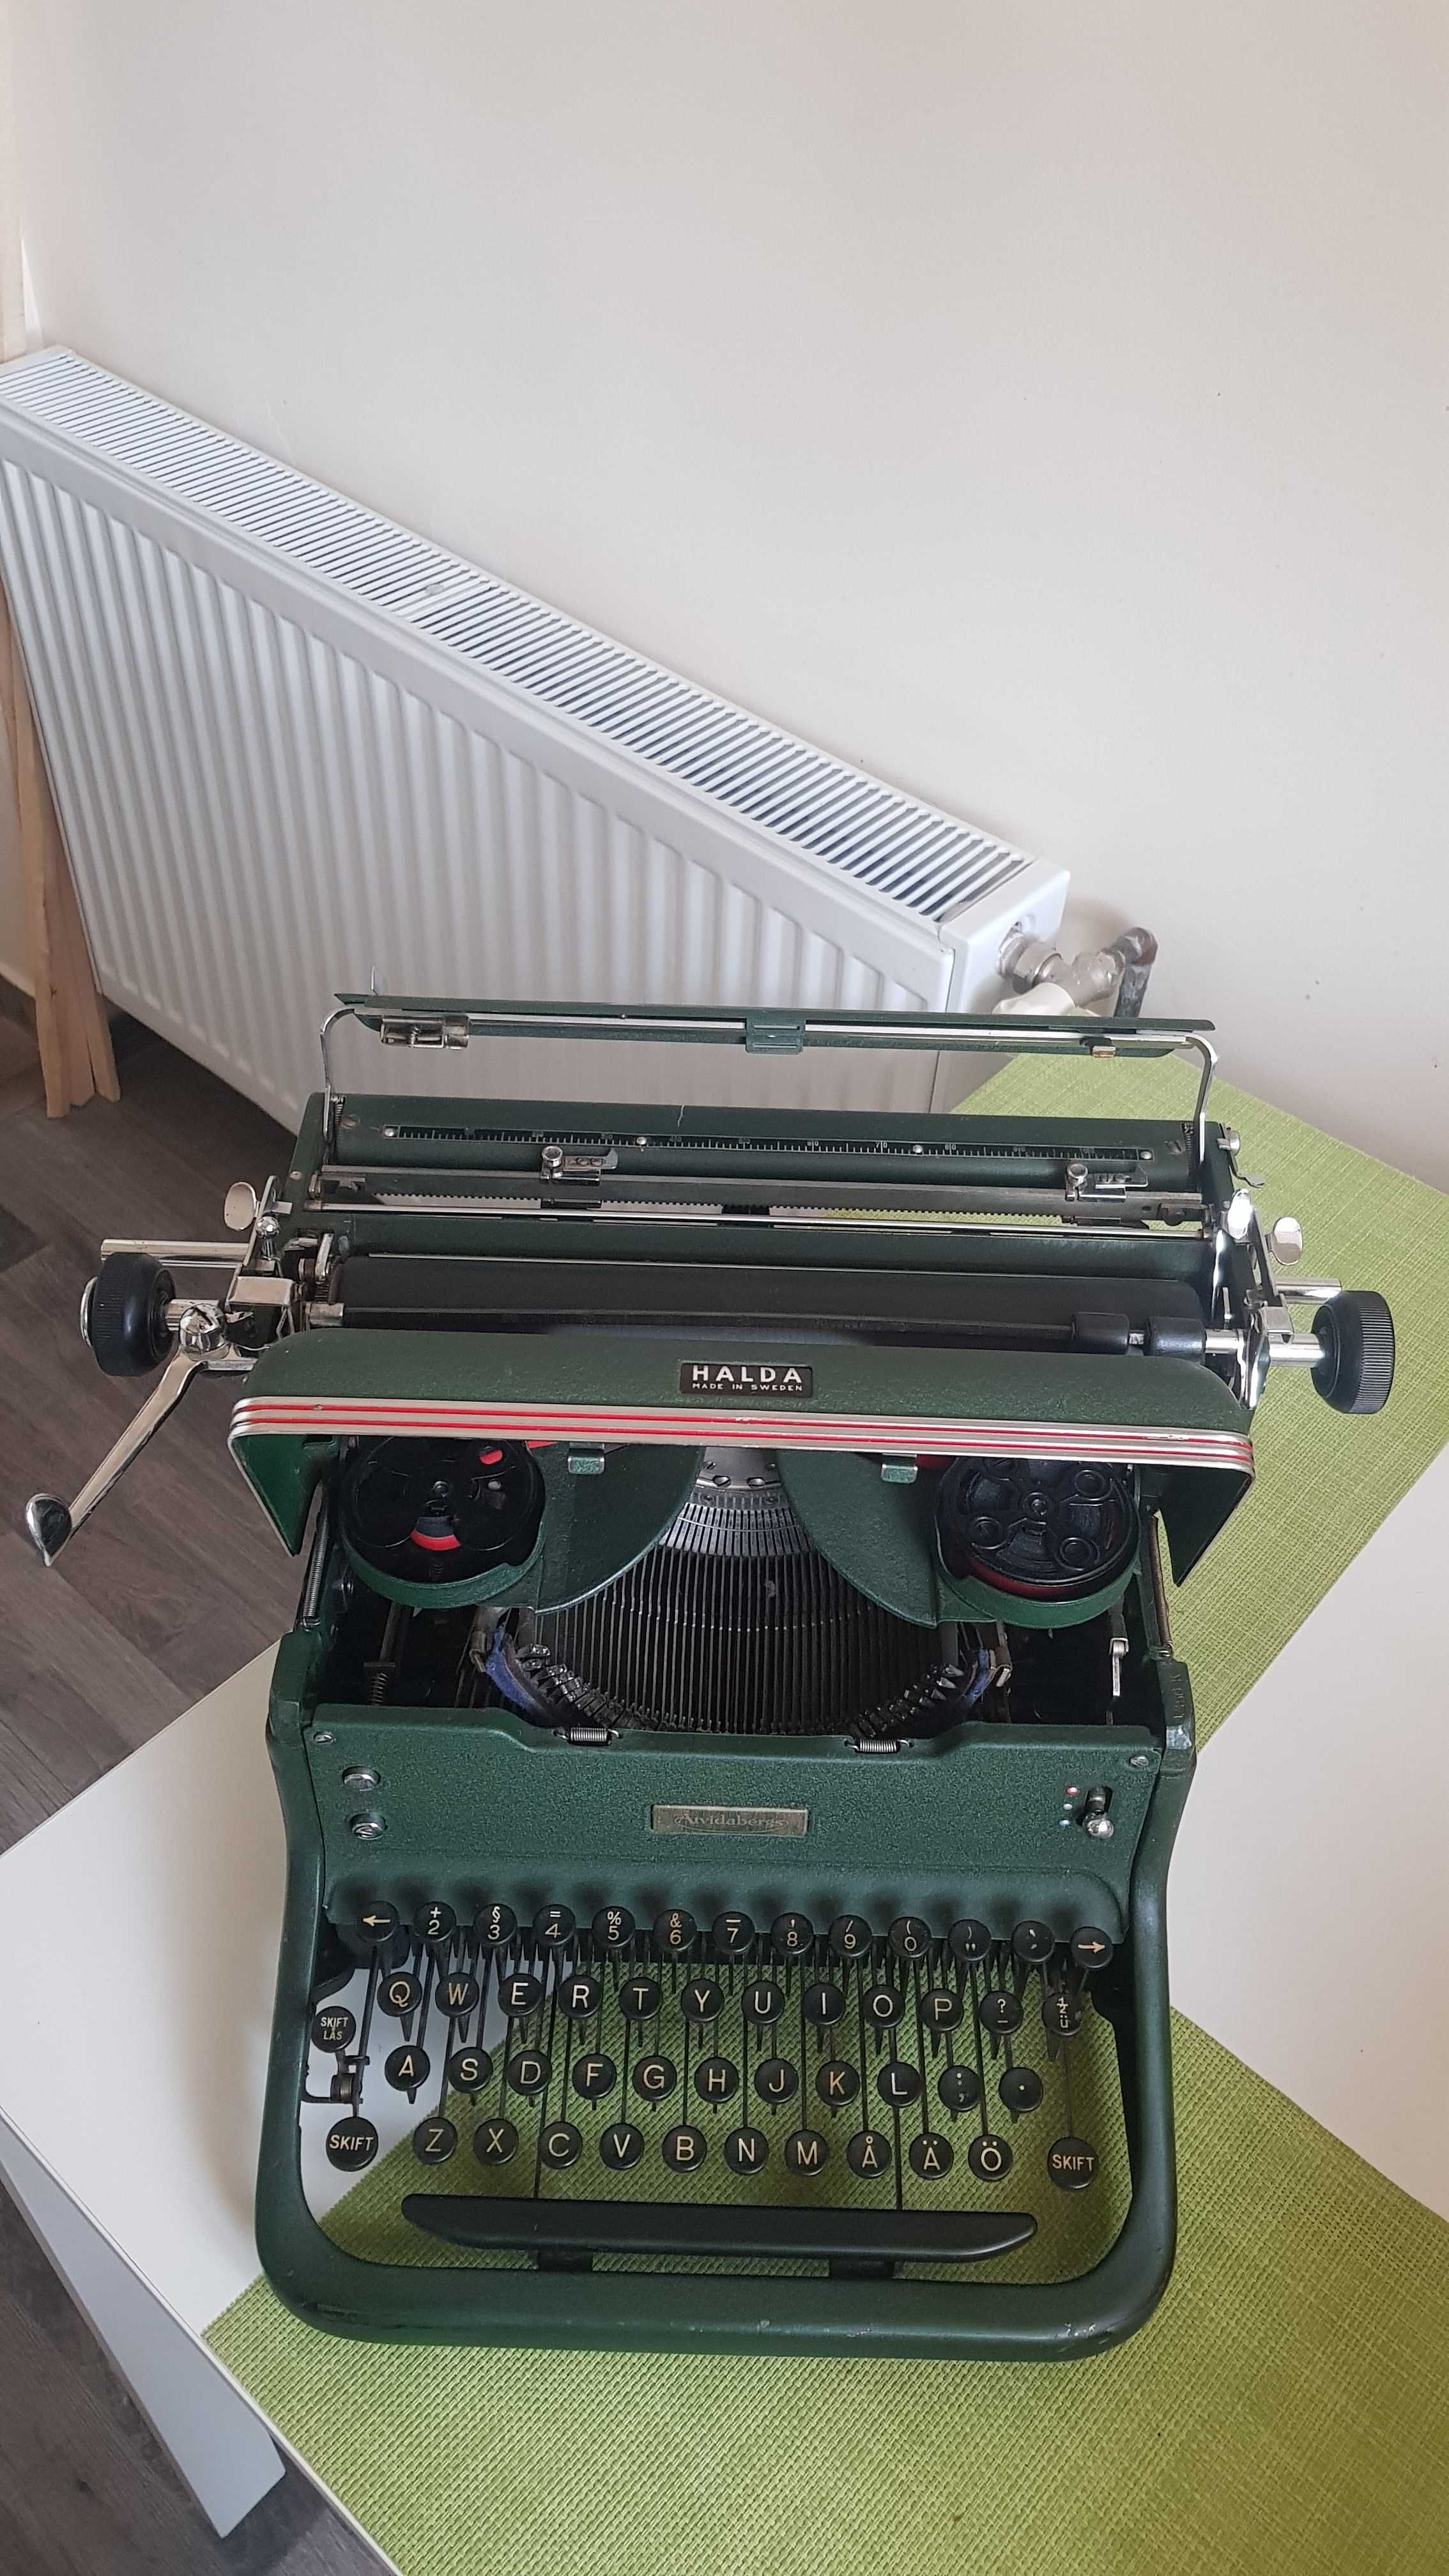 Masina de scris de colectie HALDA "Made in Sweden" anul 1950, 15 kg